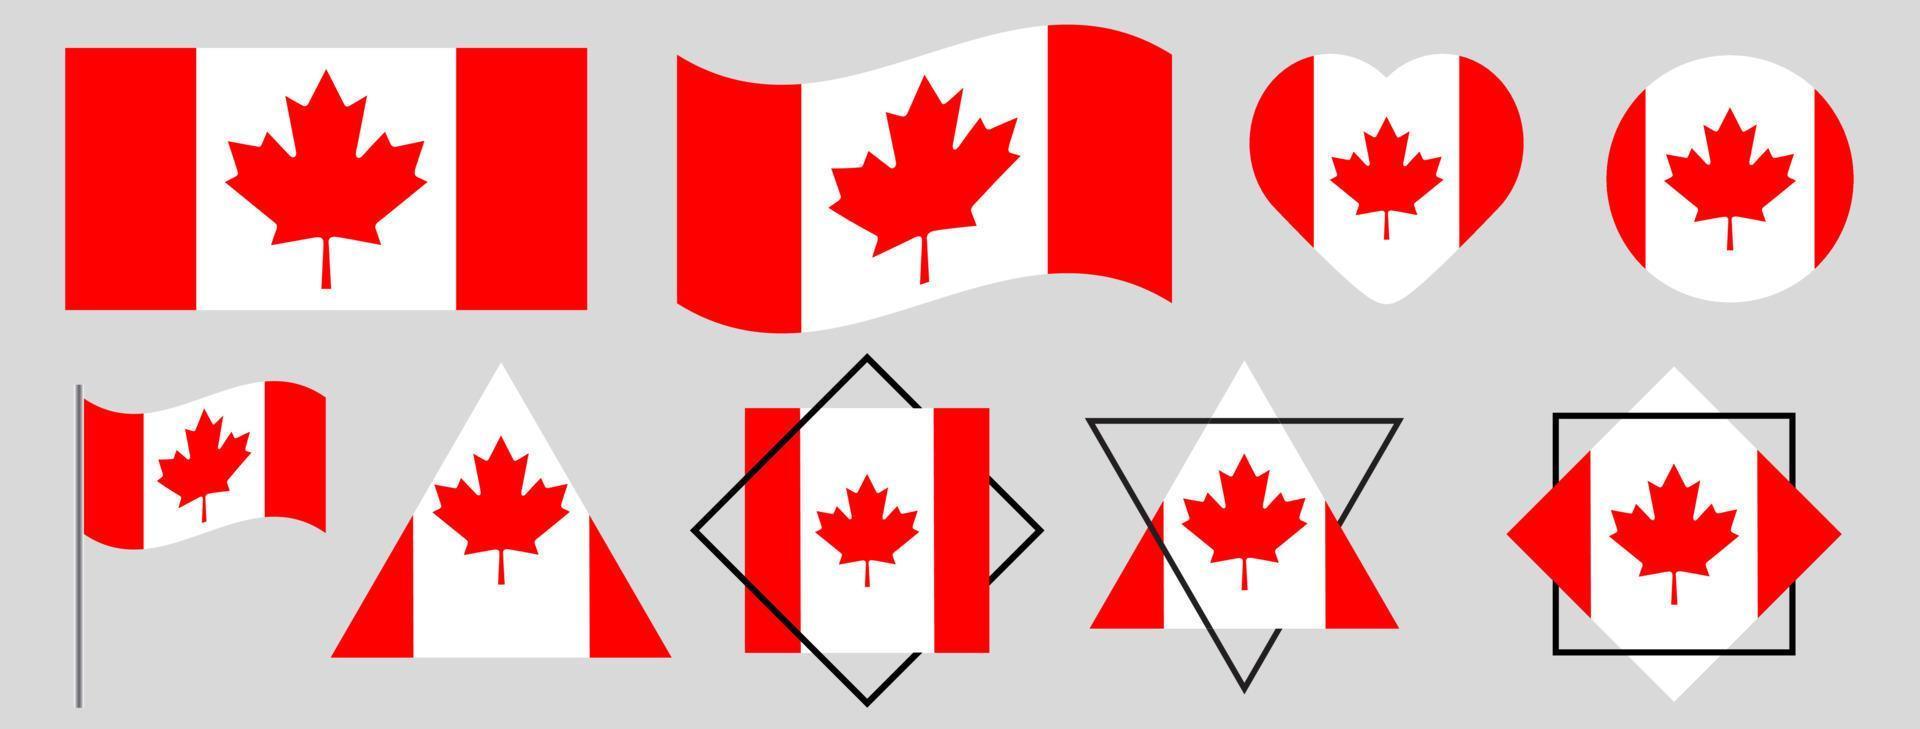 vlag van canada vector illustratie set, hoog gedetailleerde vector vlag van canada illustratie van canada nationale vlag. Canadese nationale vlag.